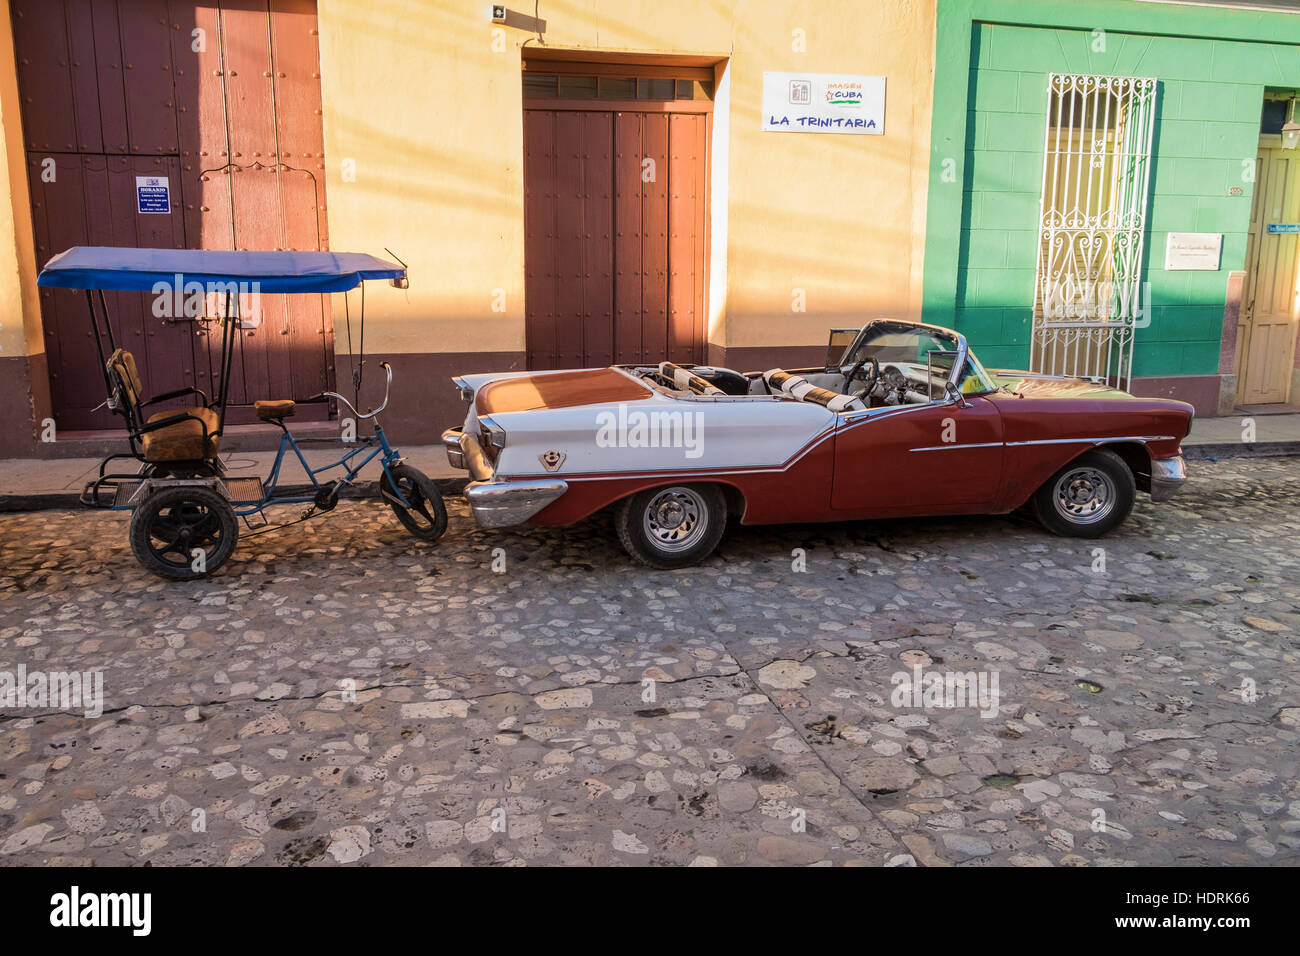 Cabriolet 1950 viejos coches americanos y triciclo taxi aparcado en la calle en Trinidad, Cuba Foto de stock